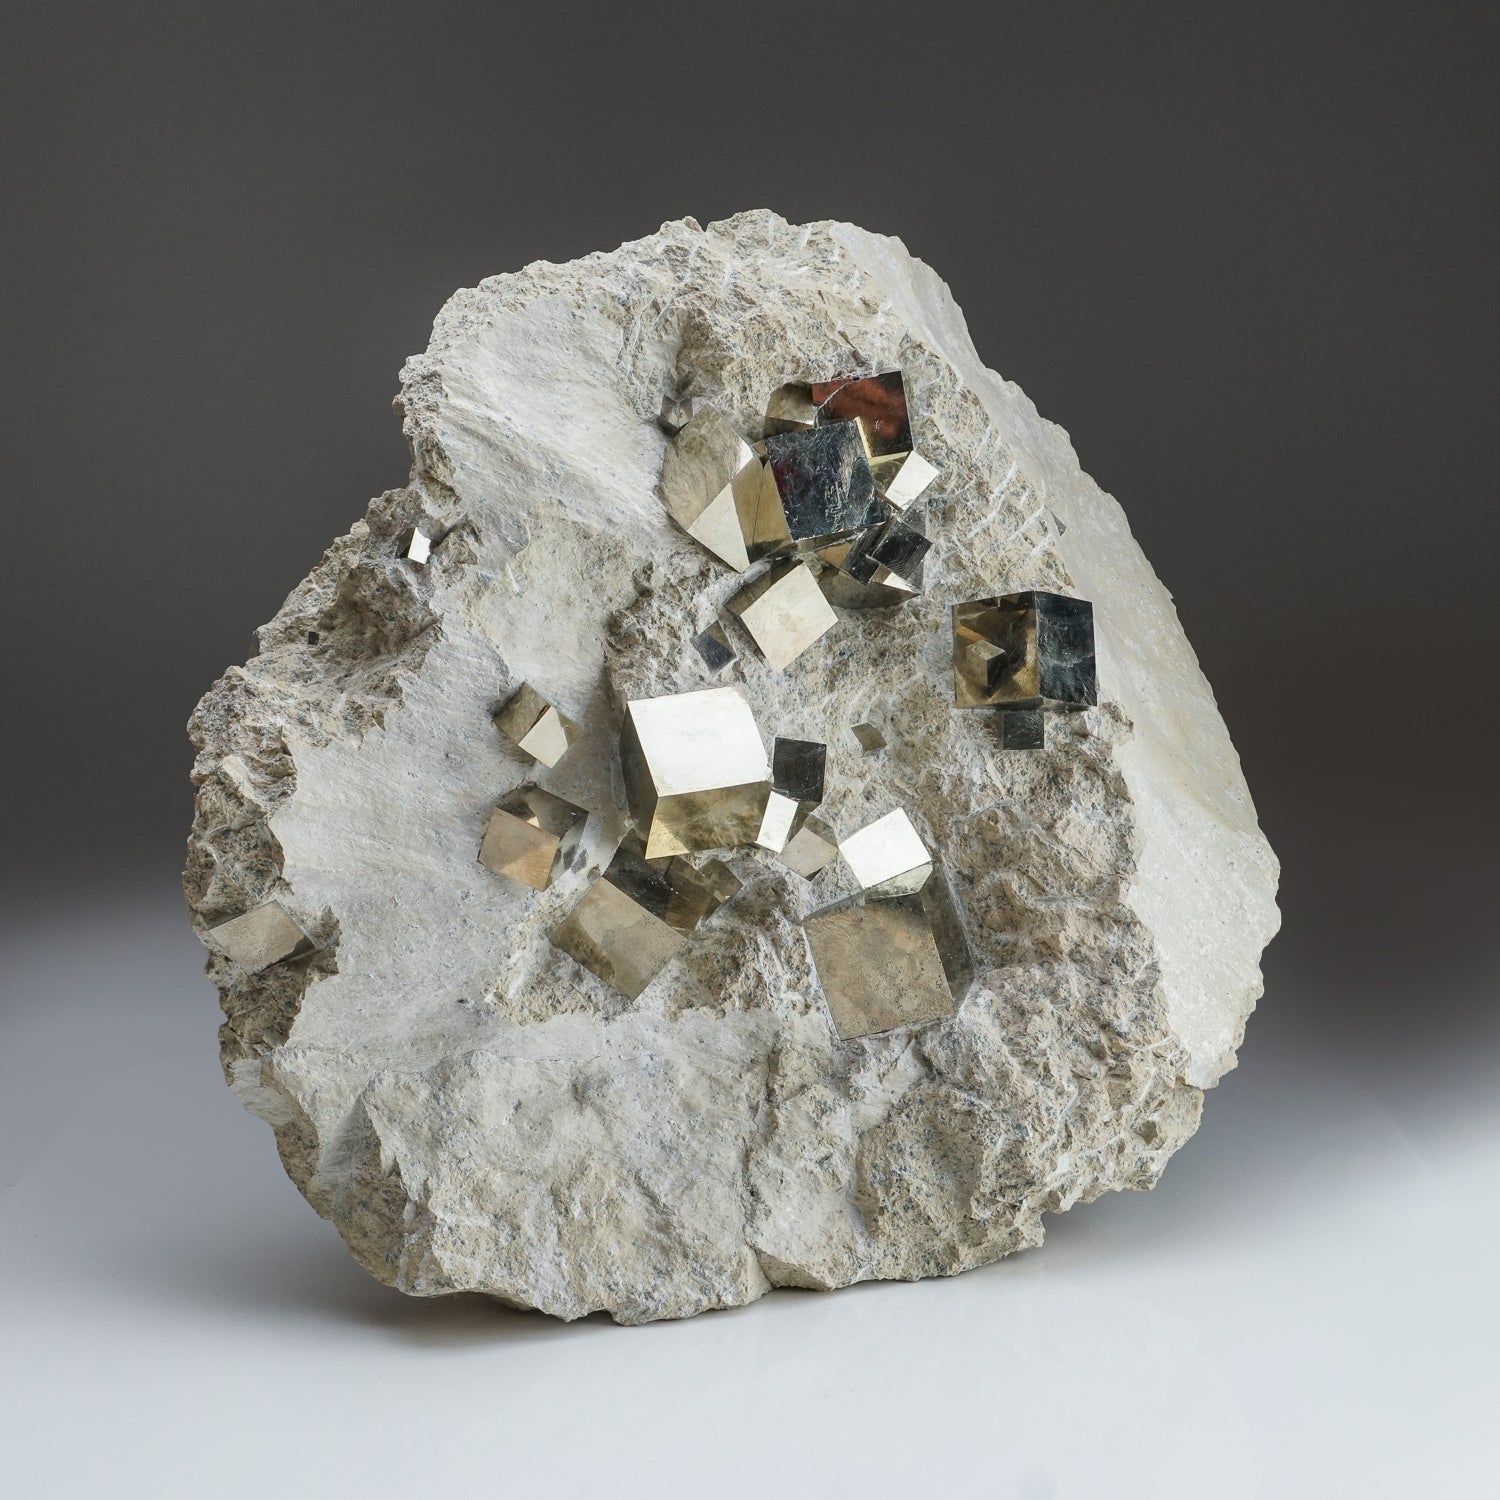 Genuine Pyrite Cubes on Basalt From Navajun, Spain (54.2 lbs)